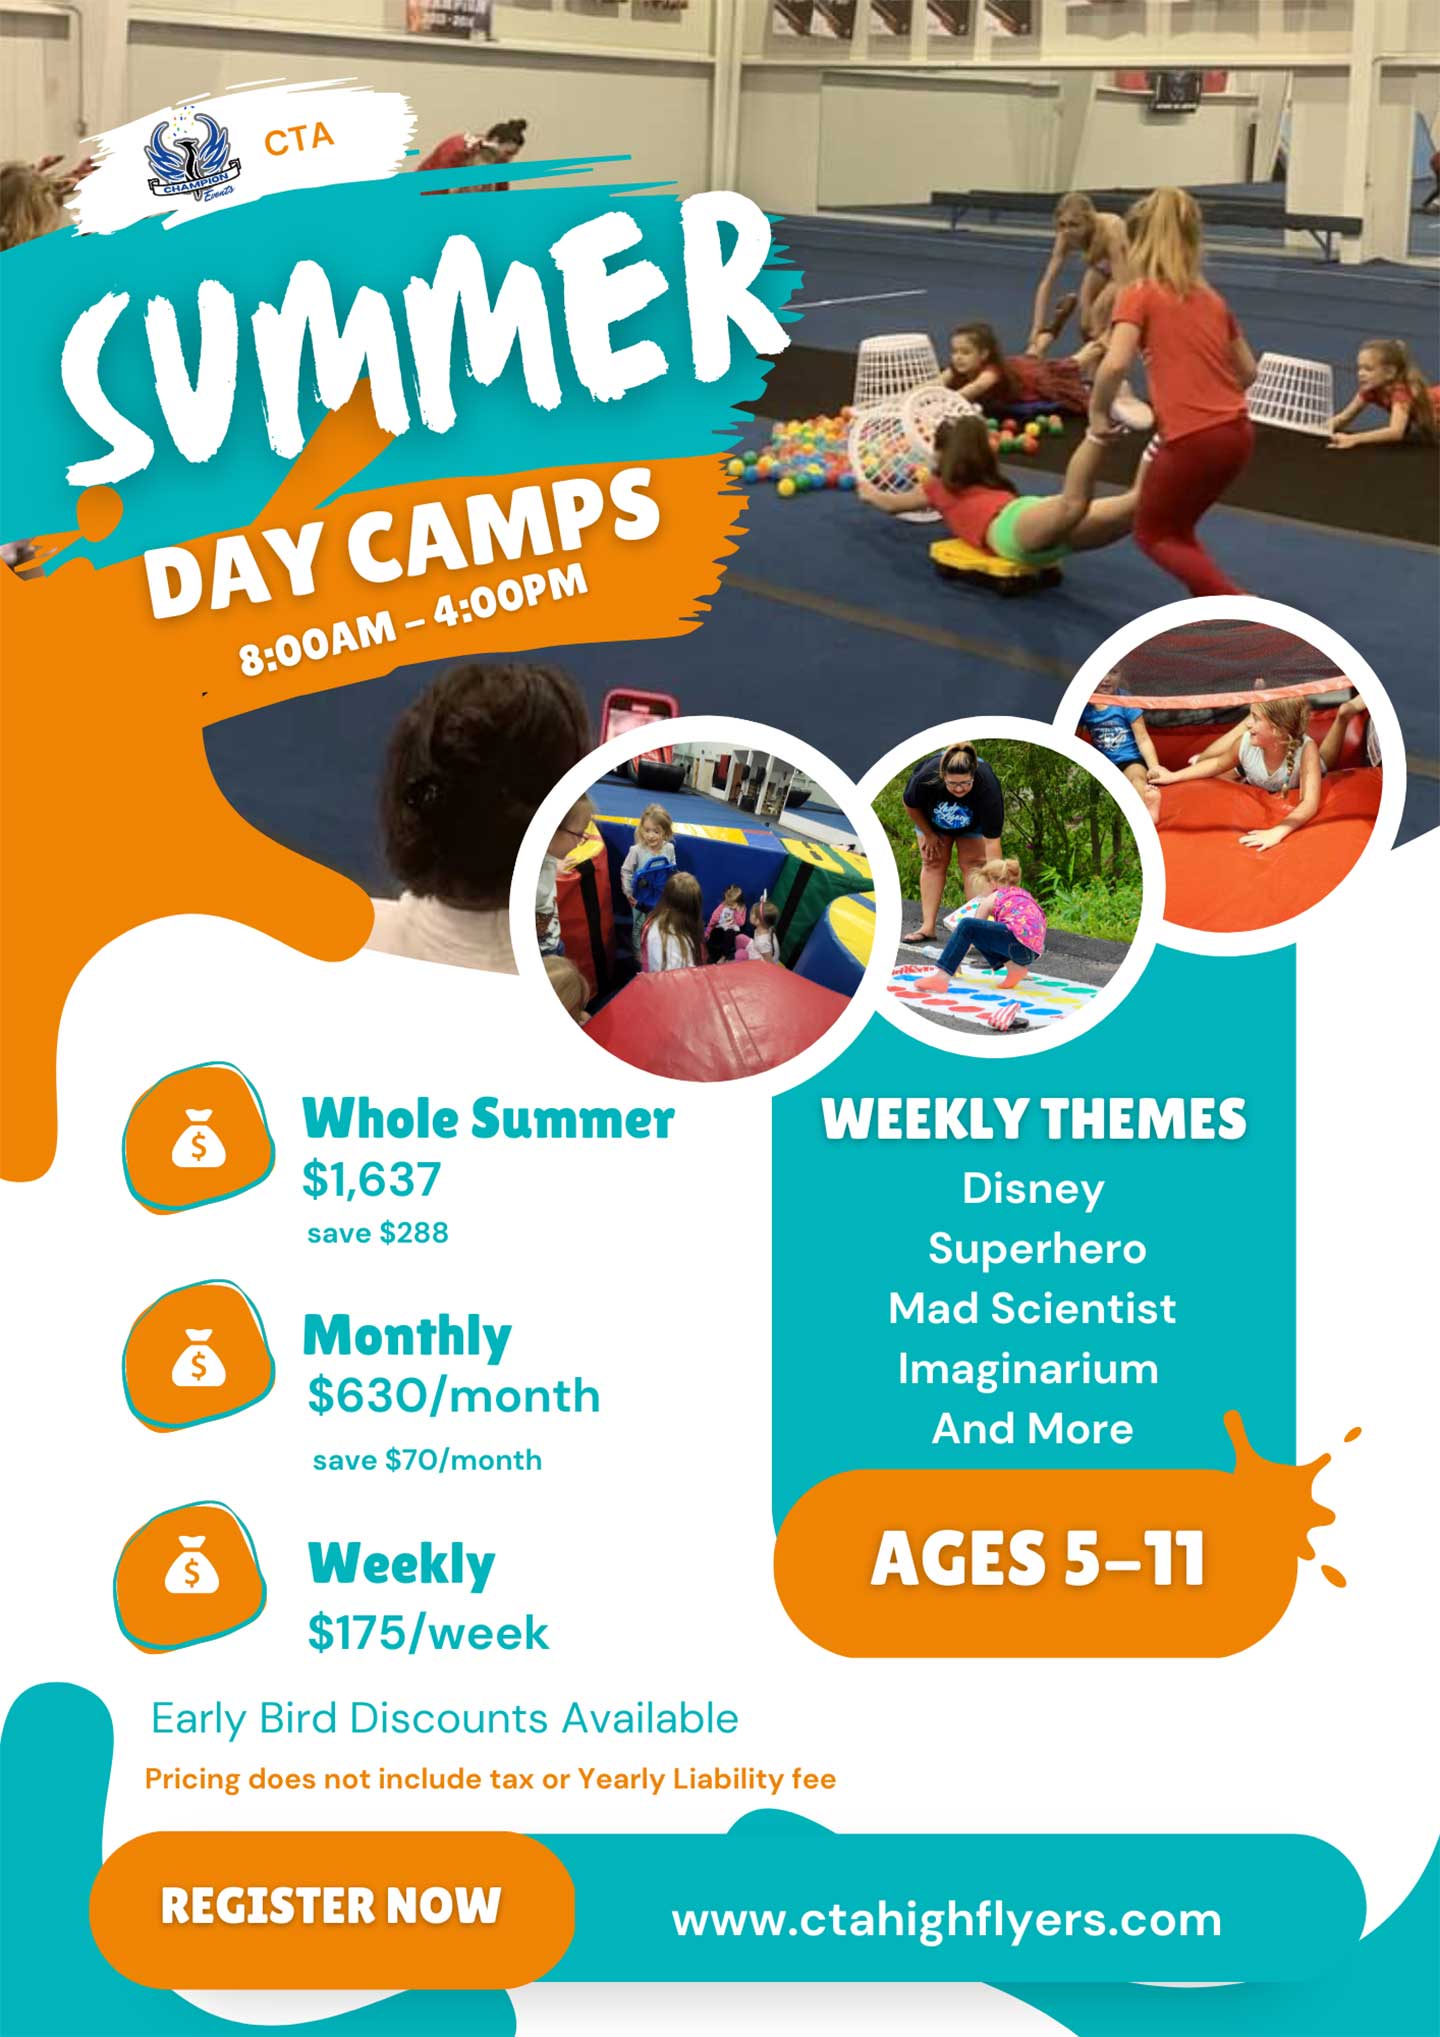 CTA DAY Camp Info